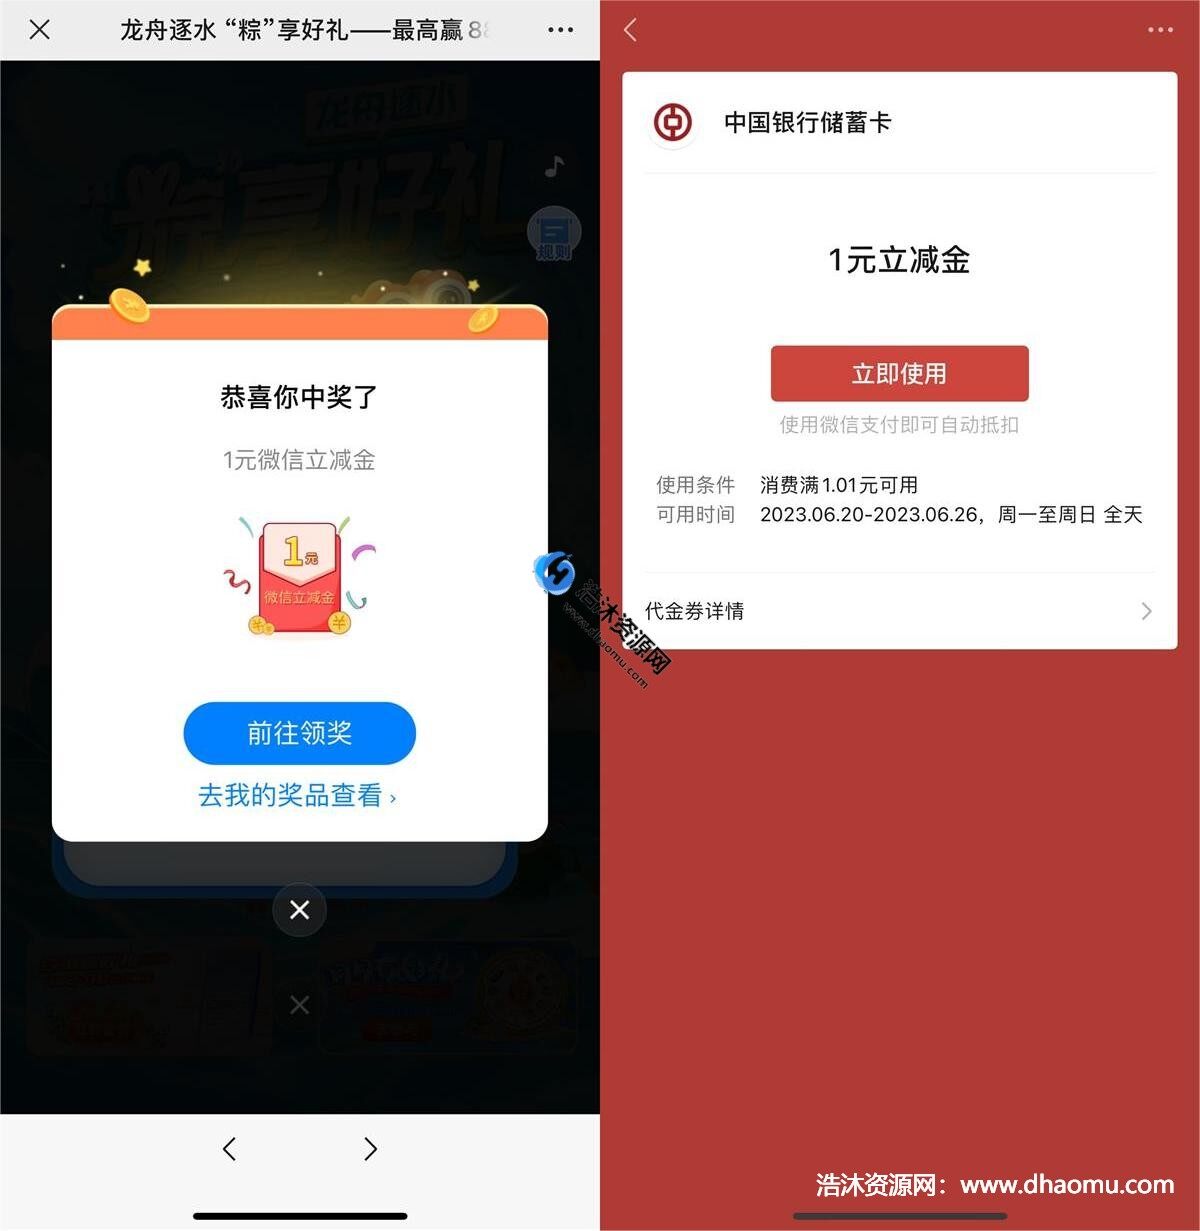 中国银行中行玩游戏免费抽取1元微信立减金